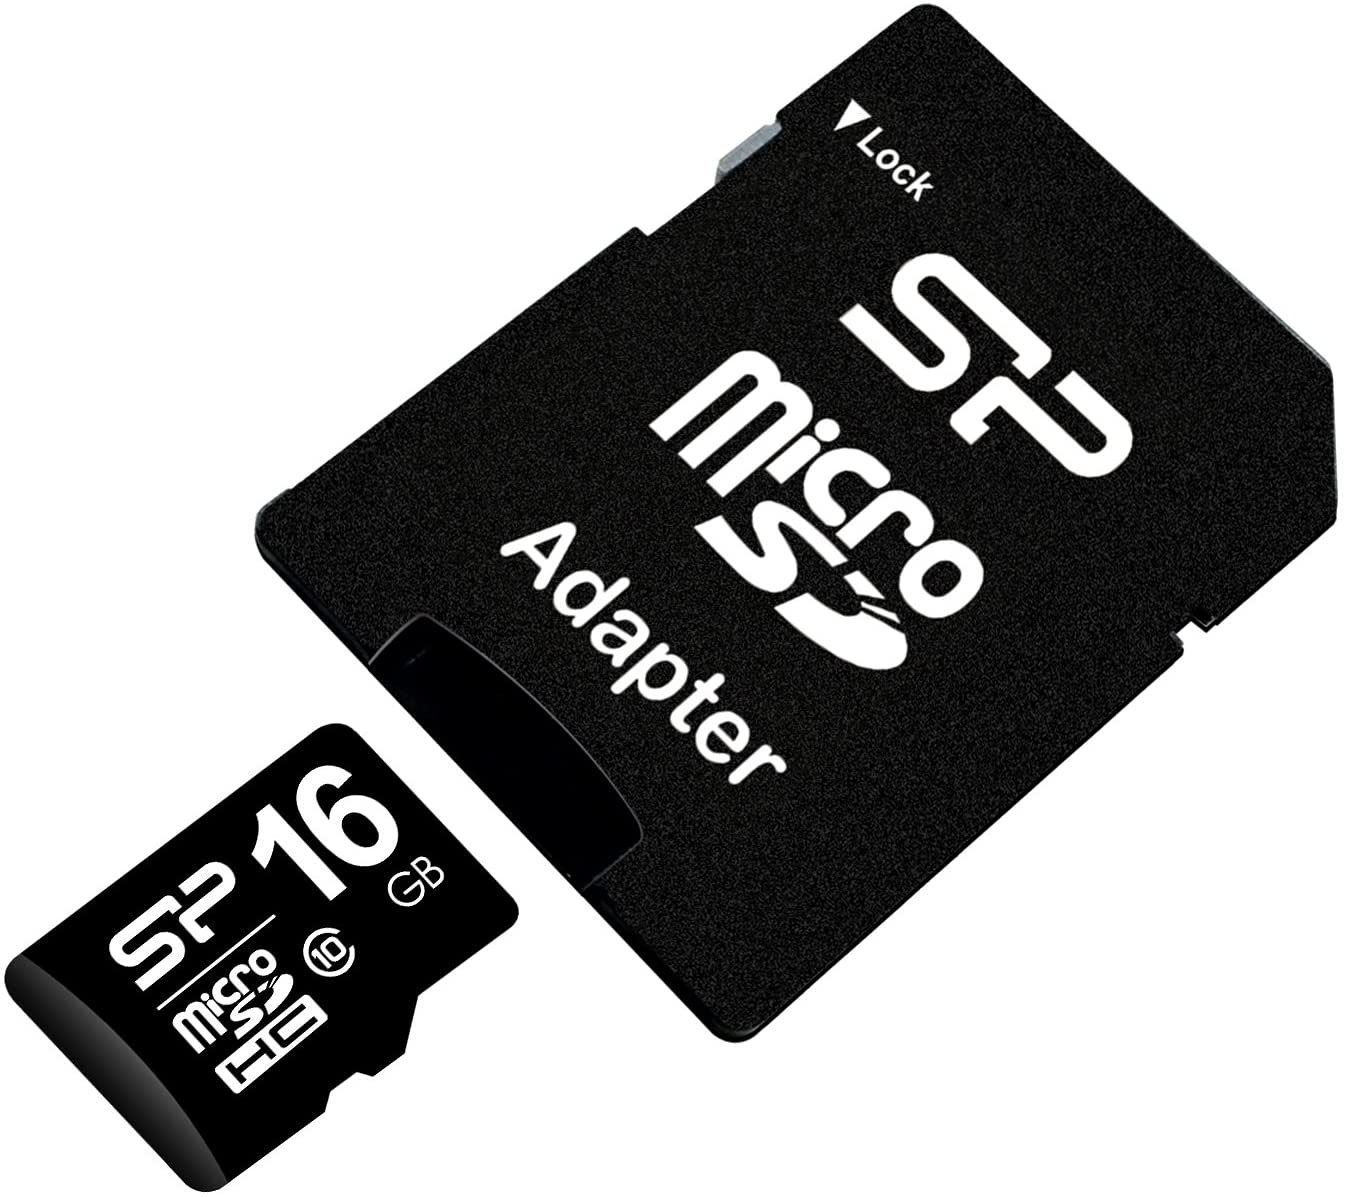 マイクロSDカード 変換アダプタ付 送料無料SDカード 16GB MicroSDメモリーカード 容量16GB SDカード マイクロ SD-16G 在庫処分大特価 売れ筋アイテムラン メール便送料無料 Class10